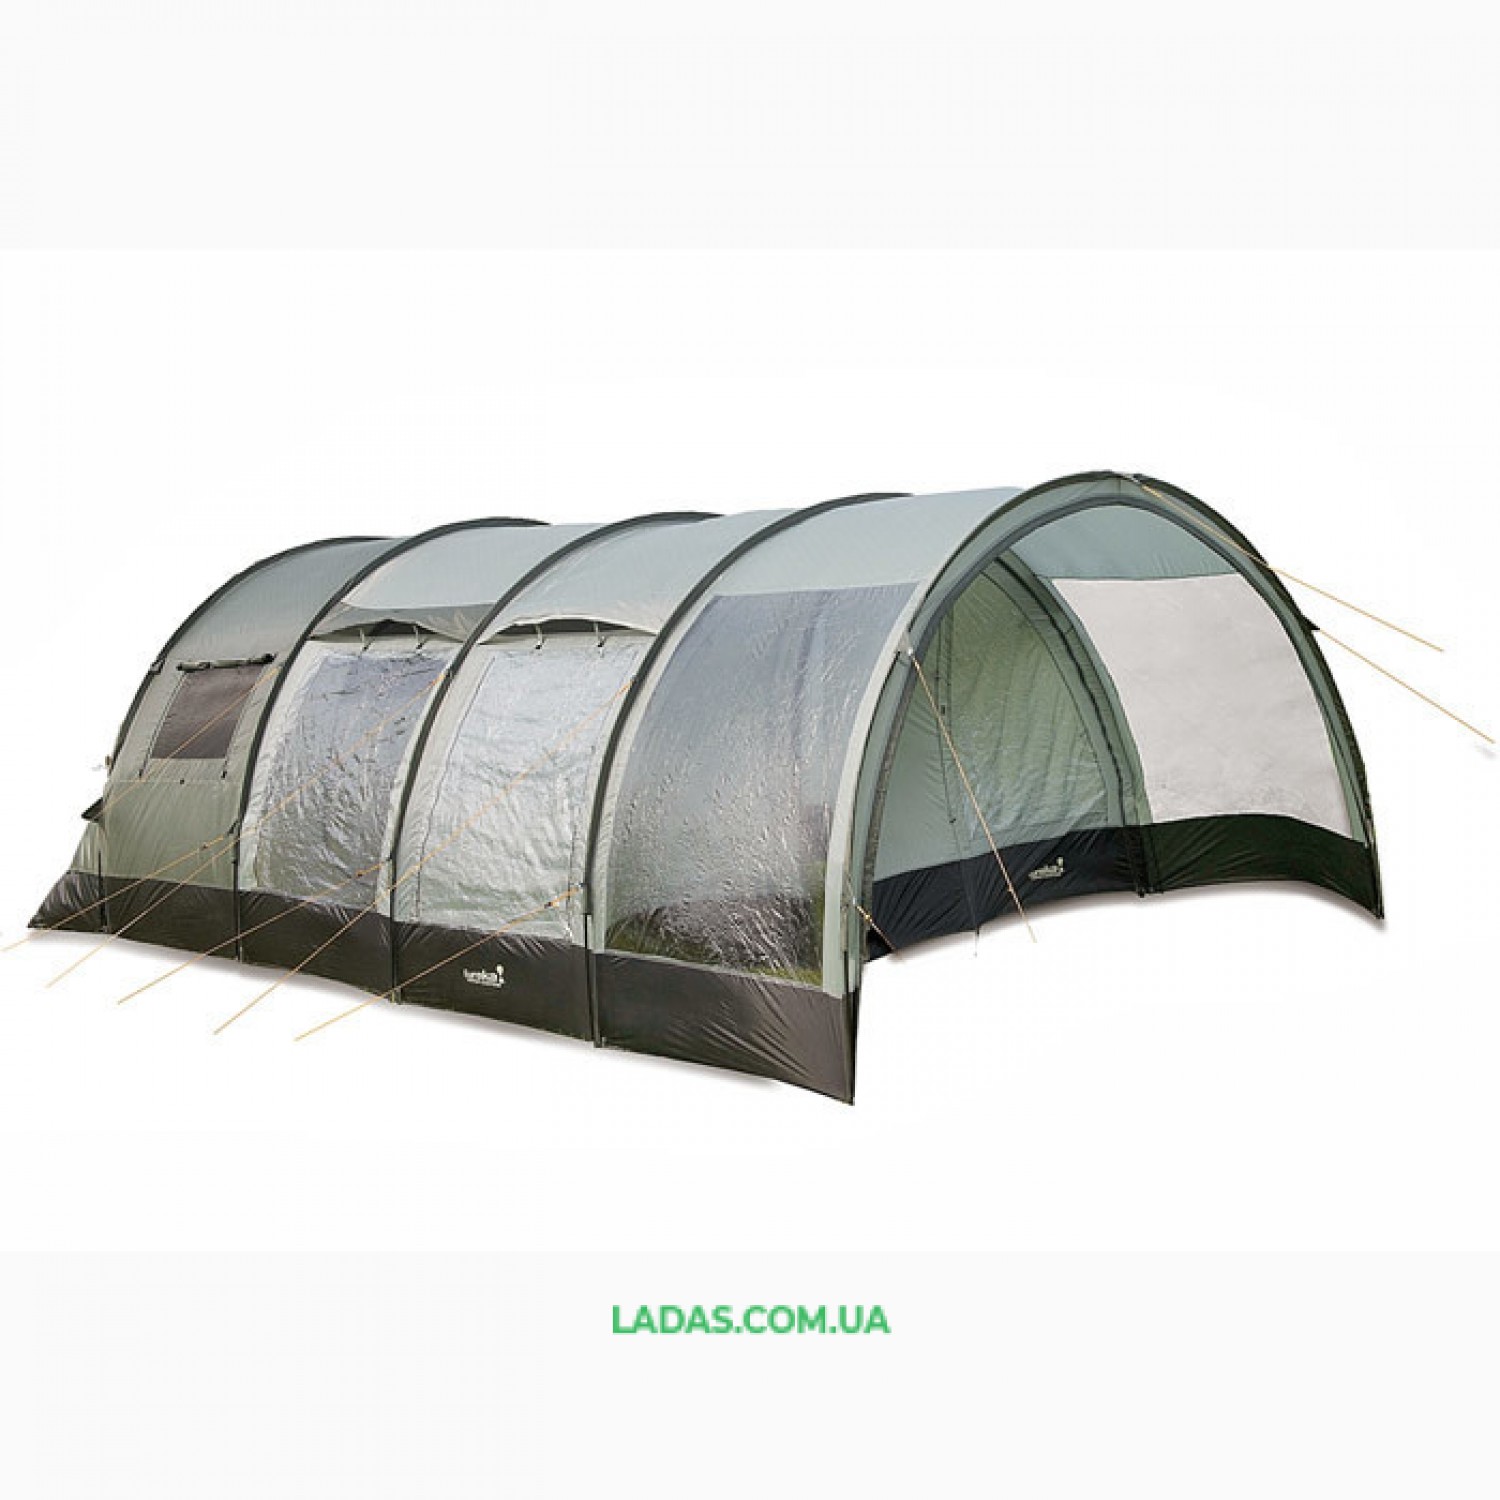 Пятиместная двухкомнатная палатка Eureka! Copper Сamp 1620